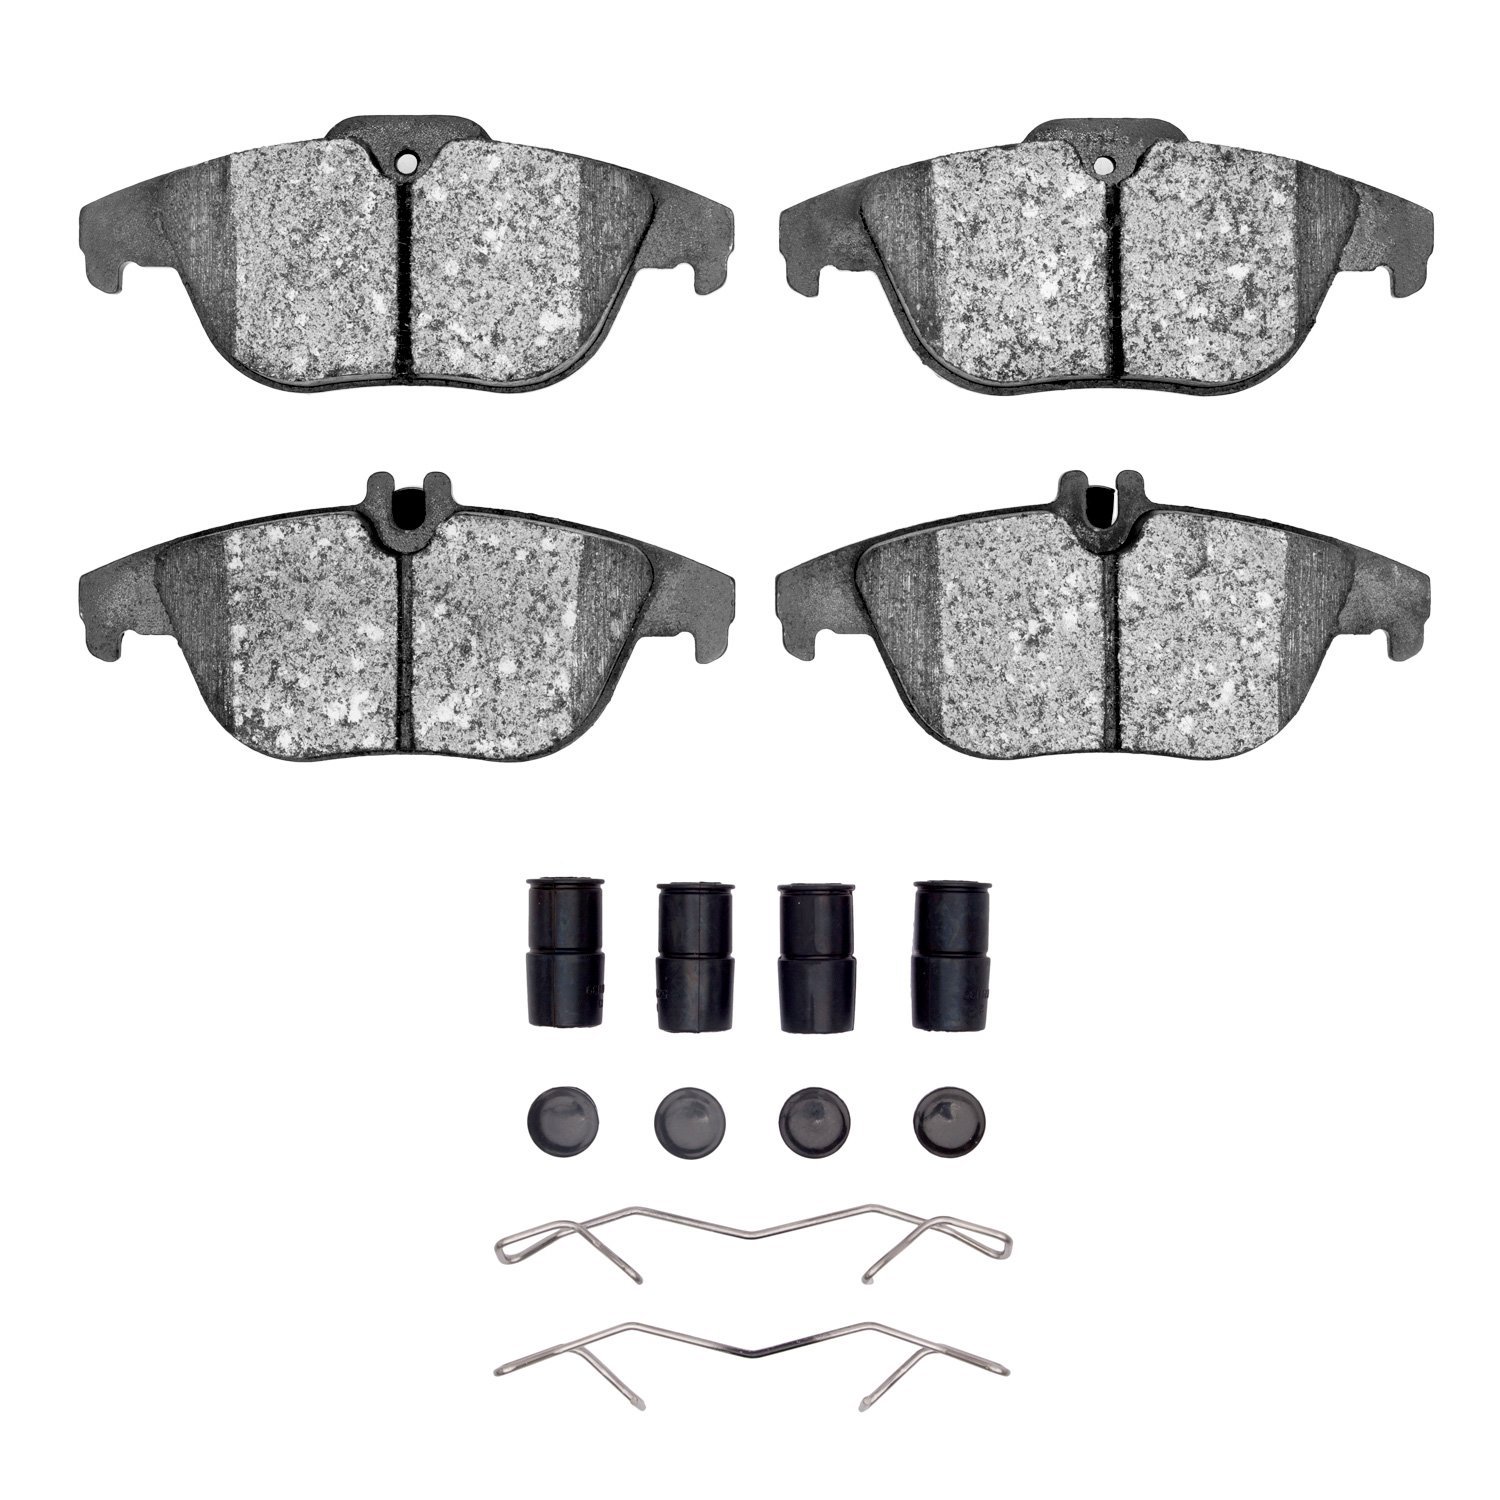 1310-1341-11 3000-Series Ceramic Brake Pads & Hardware Kit, 2009-2015 Mercedes-Benz, Position: Rear